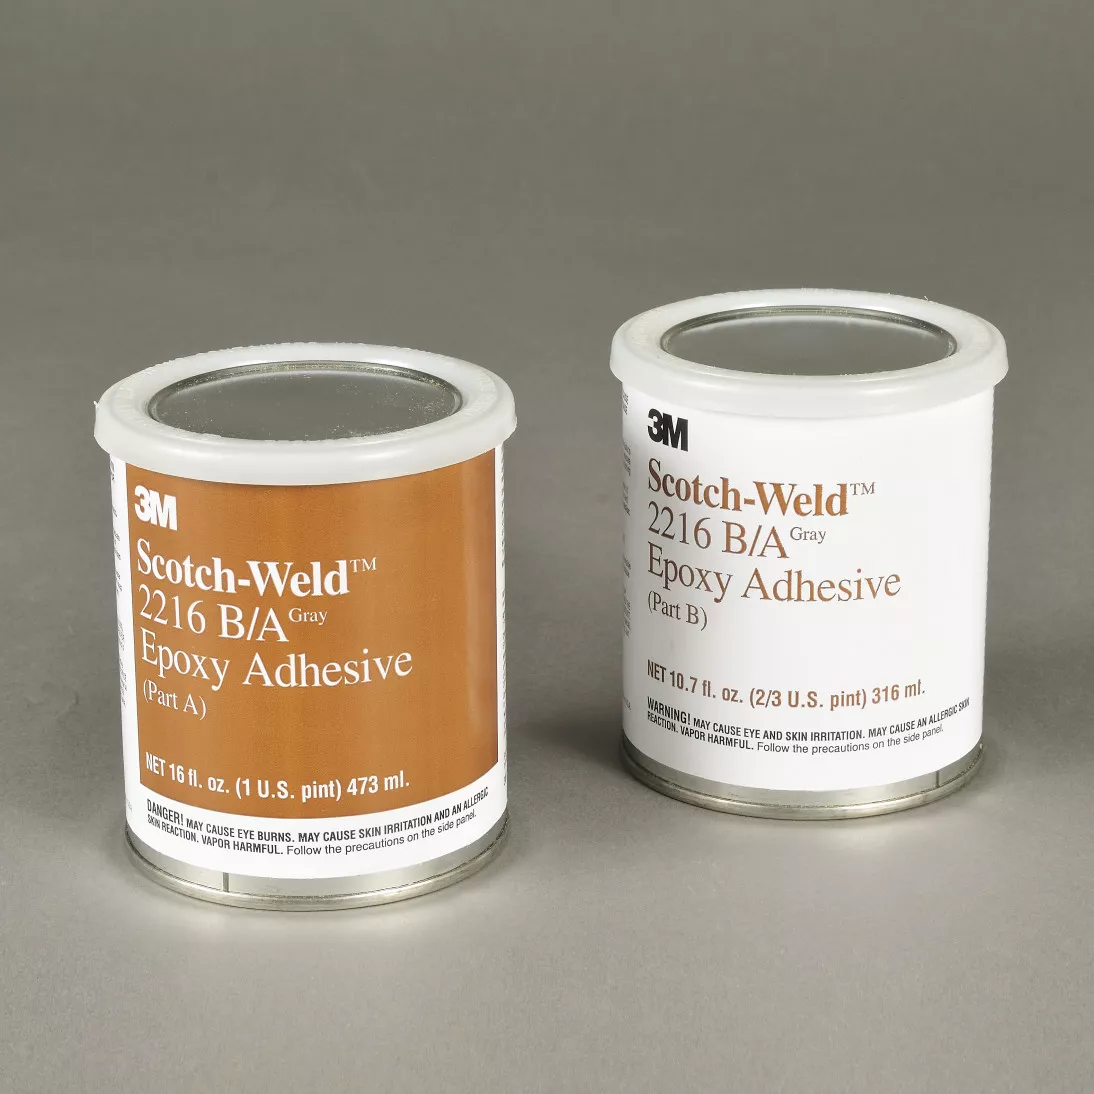 3M™ Scotch-Weld™ Epoxy Adhesive 2216, Gray, Part B/A, 1 Pint, 6 Kit/Case